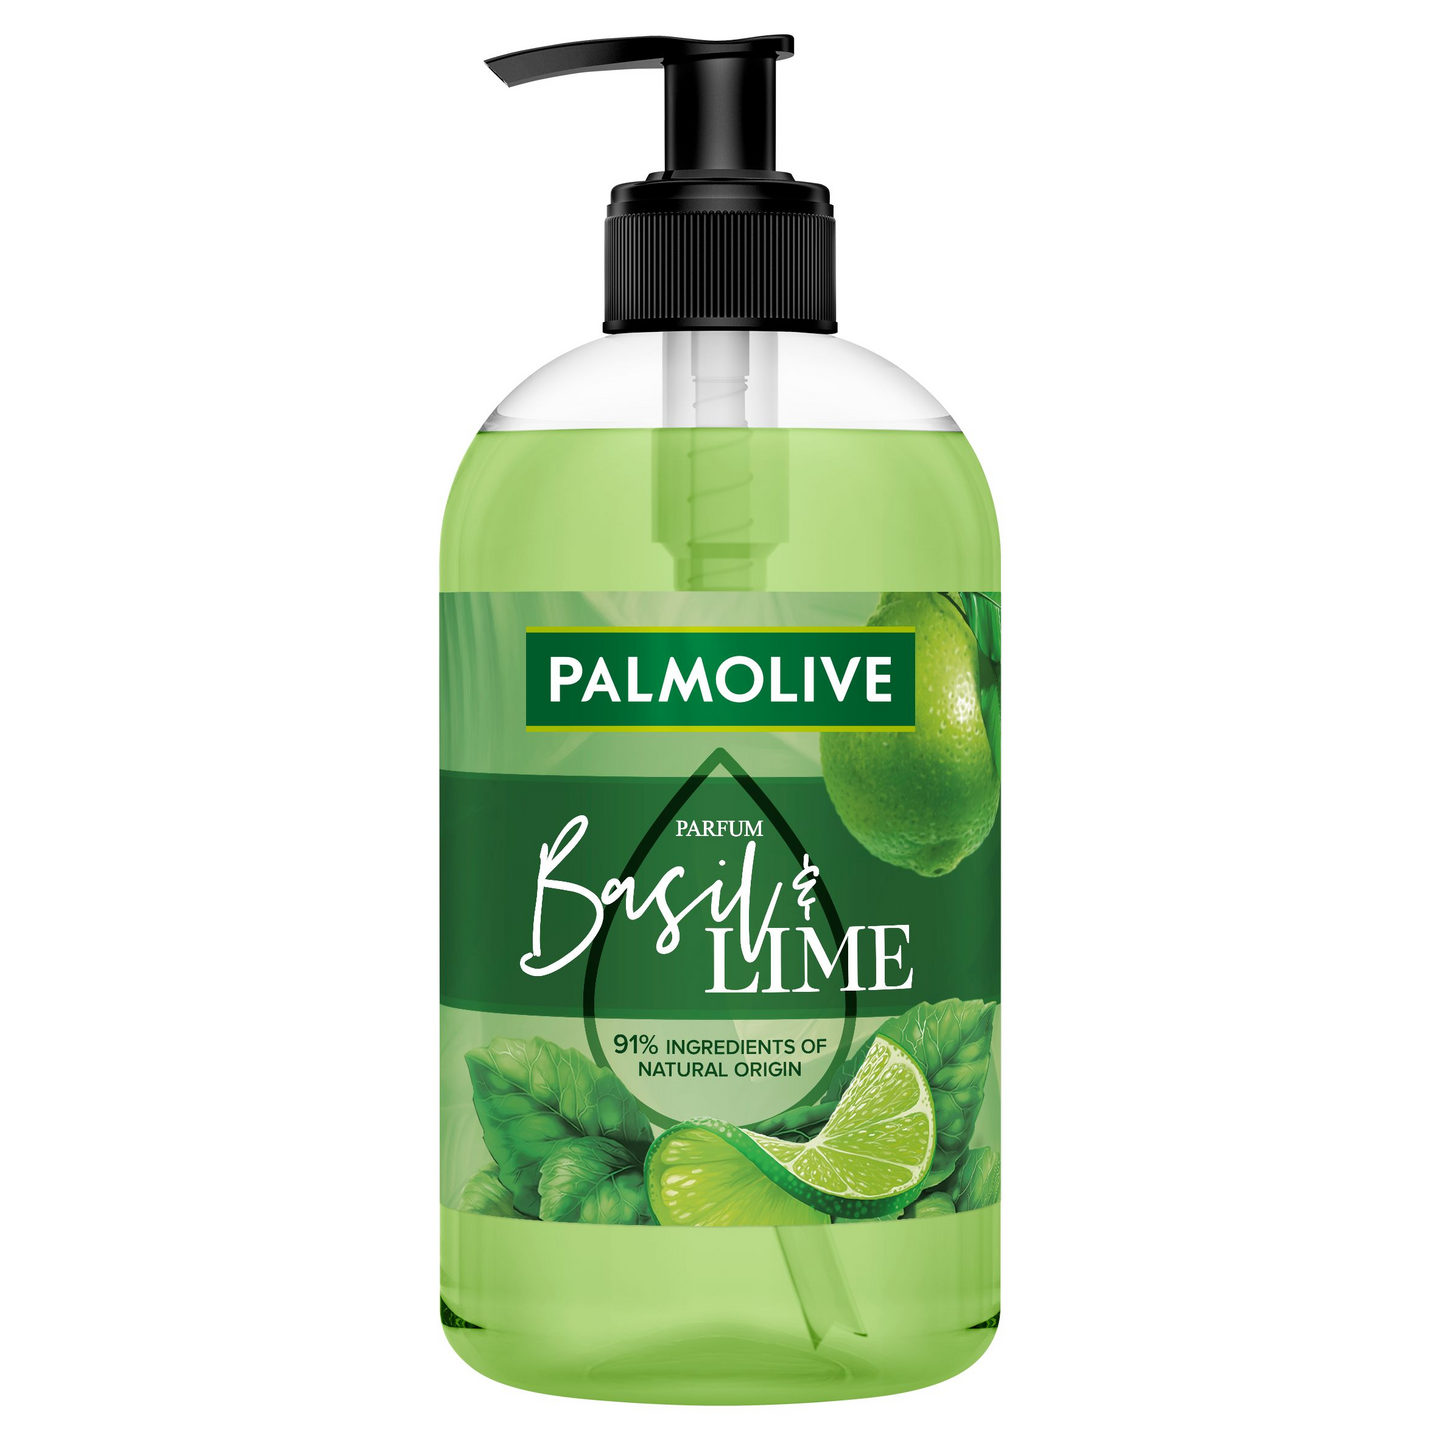 Palmolive nestesaippua 500ml Parfum Basil & Lime